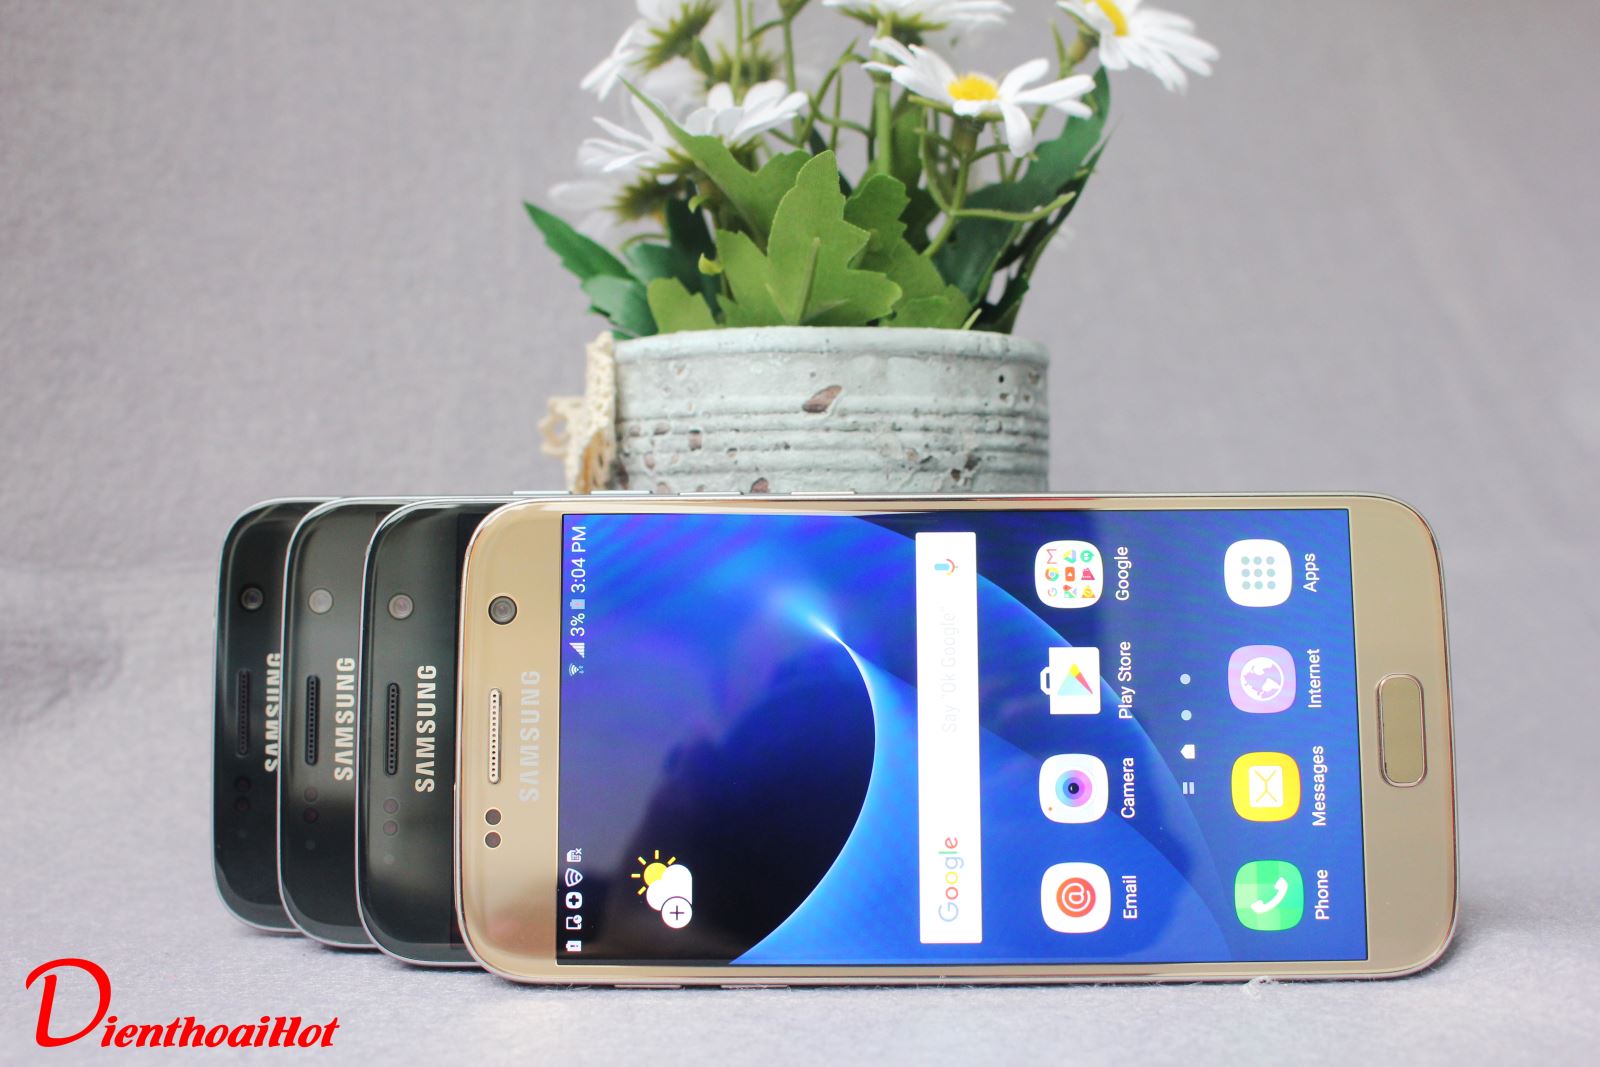 Samsung Galaxy S7 xách tay cũ tại Dienthoaihot